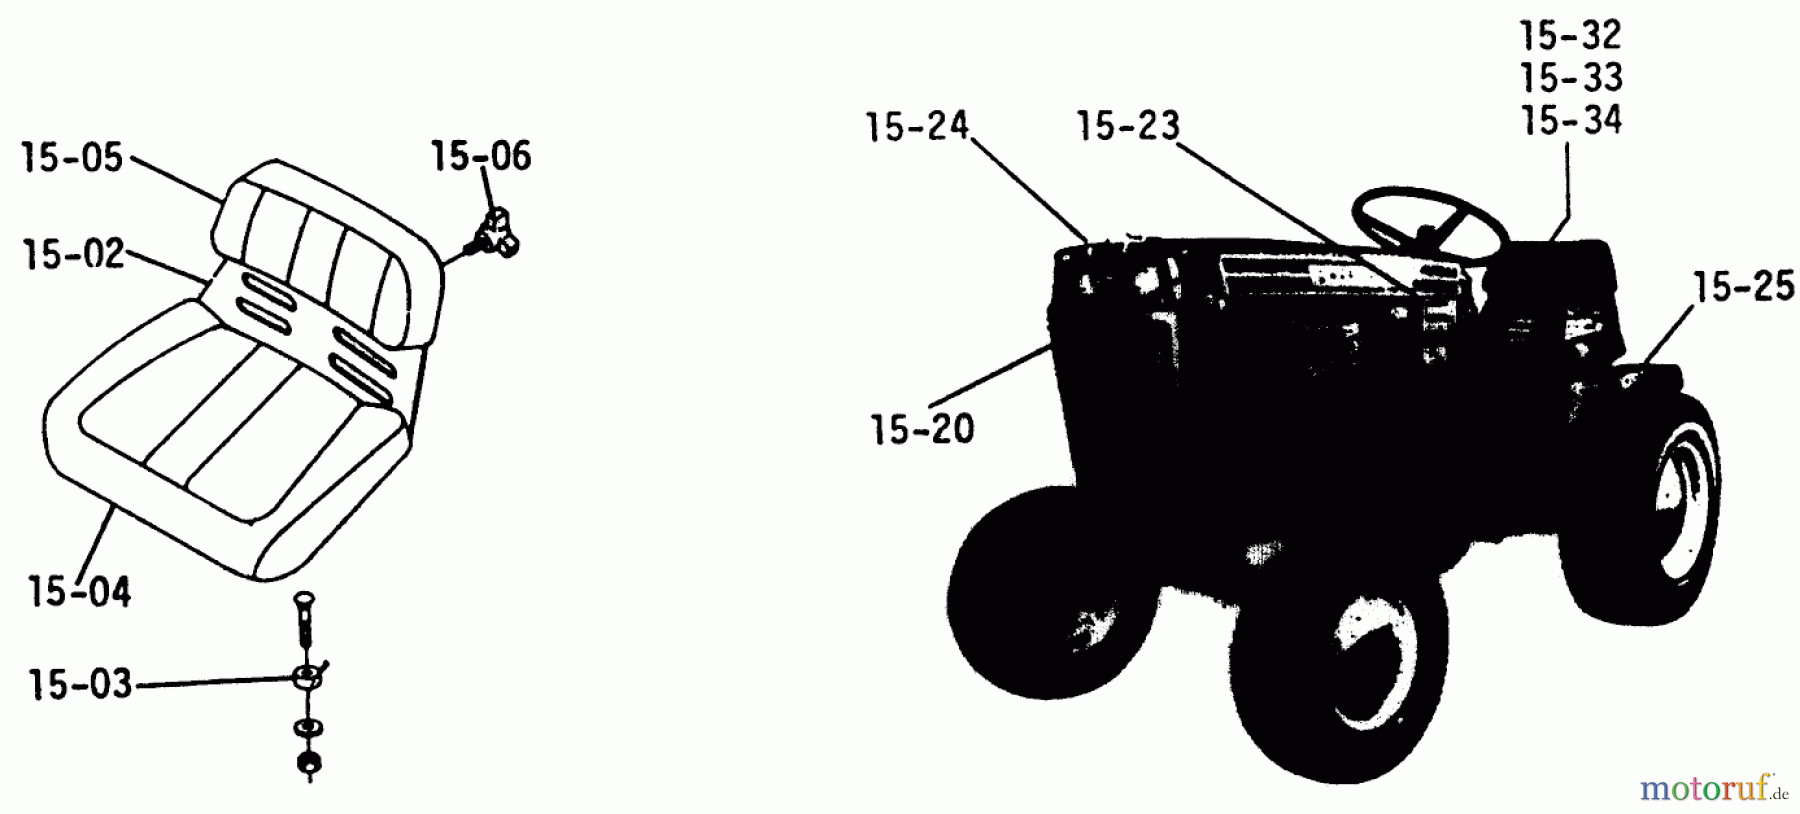  Toro Neu Mowers, Lawn & Garden Tractor Seite 1 1-0300 - Toro Raider 10 Tractor, 1971 SEATS, DECALS, MISC. TRIM (PLATE 15.1)